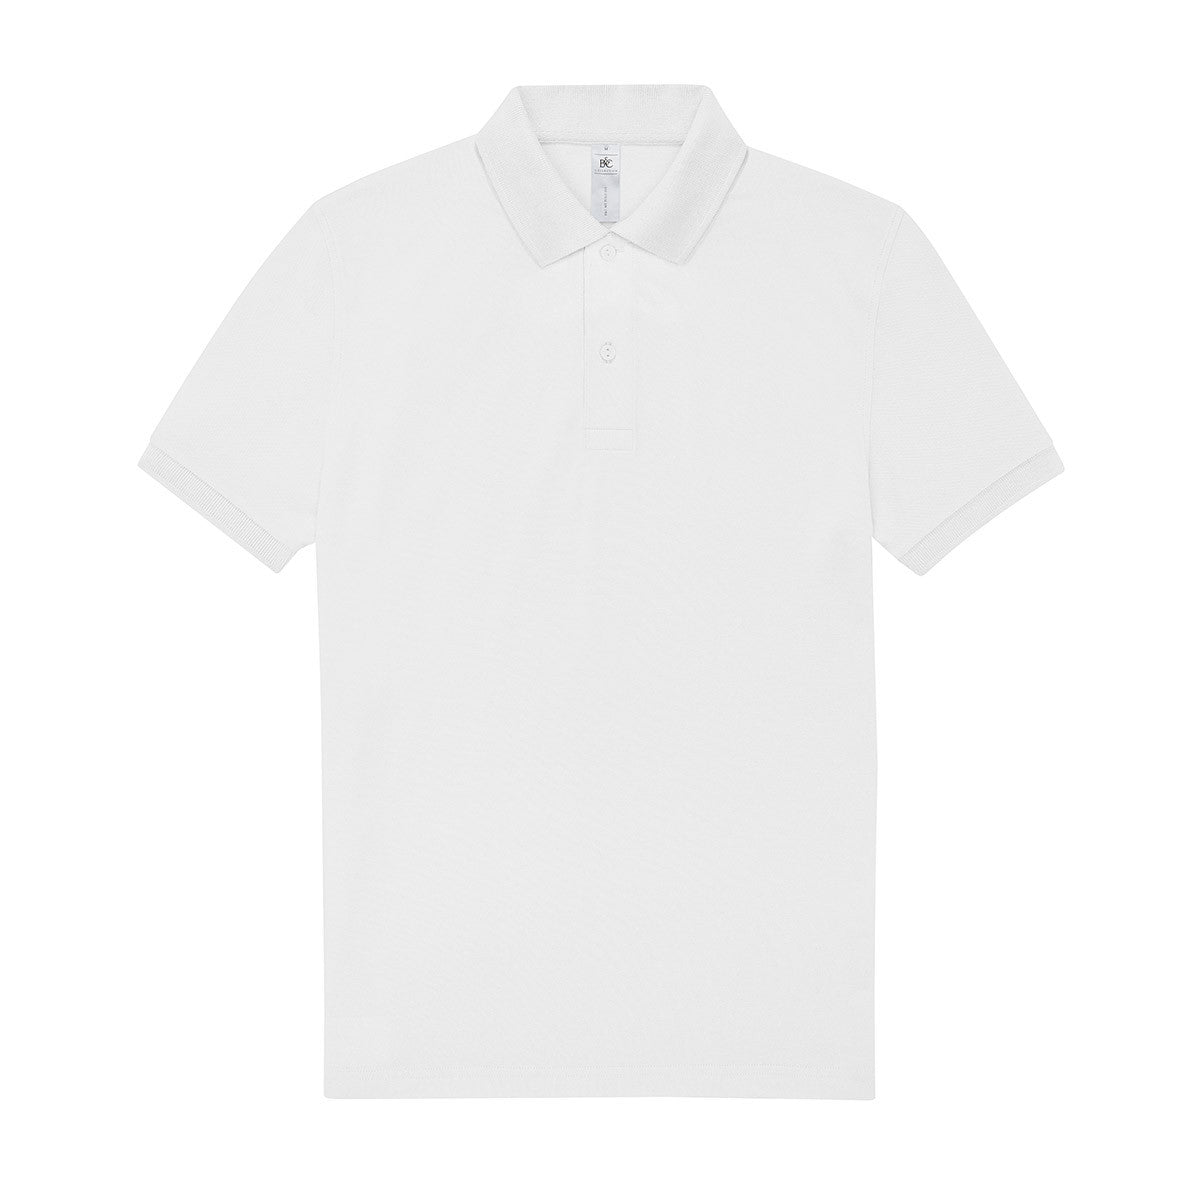 Premium Poloshirt 210 (Men/ Unisex)(Muster)